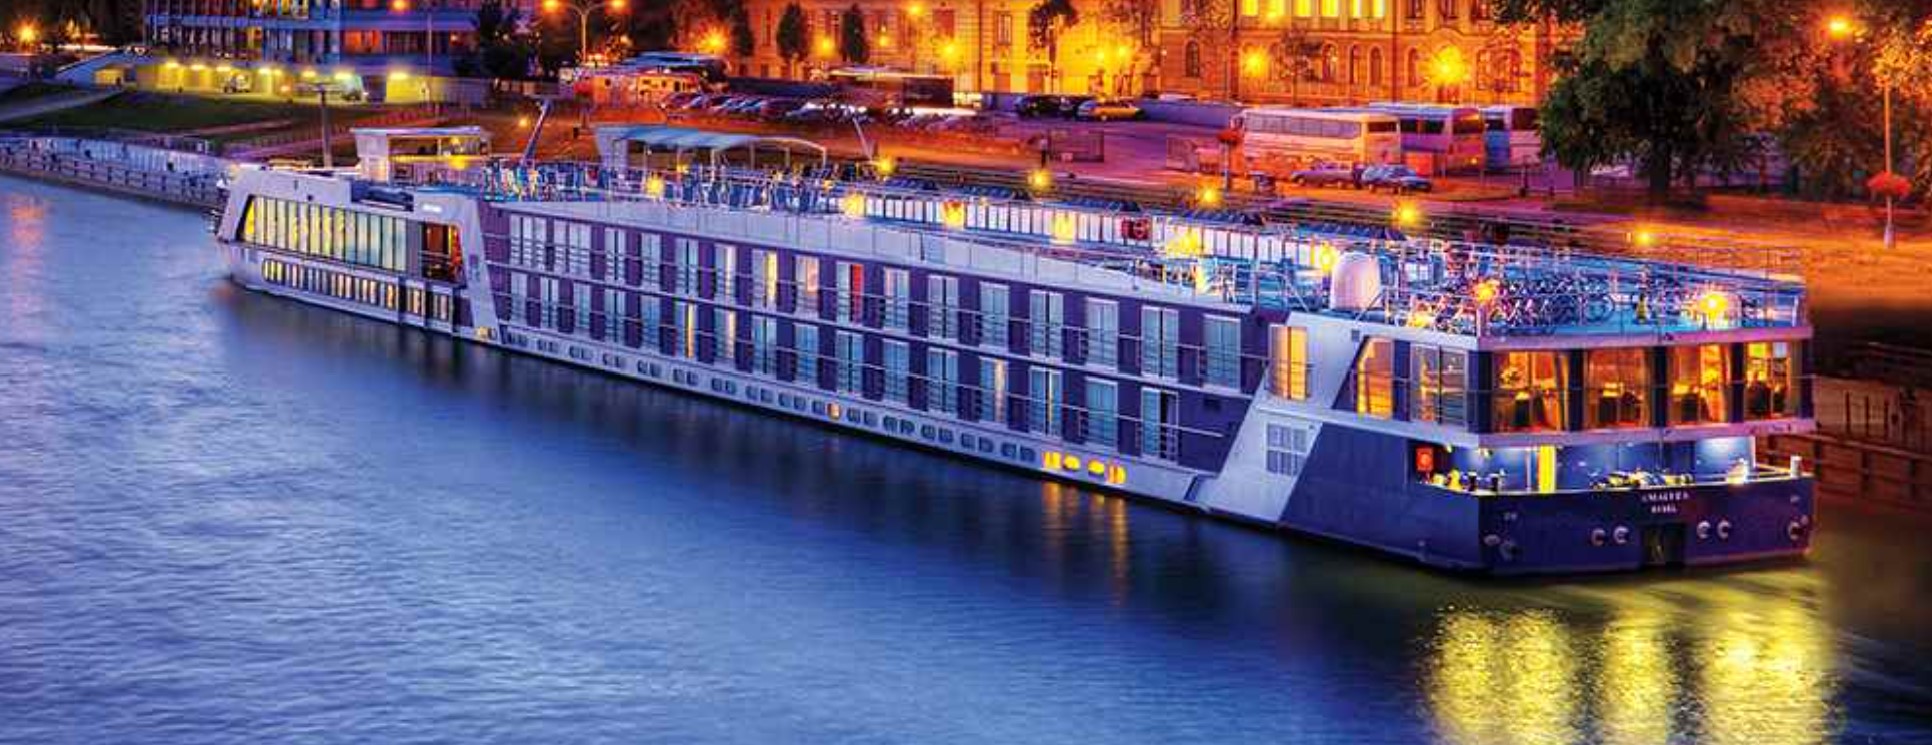 AMA River Cruise Ship at dusk